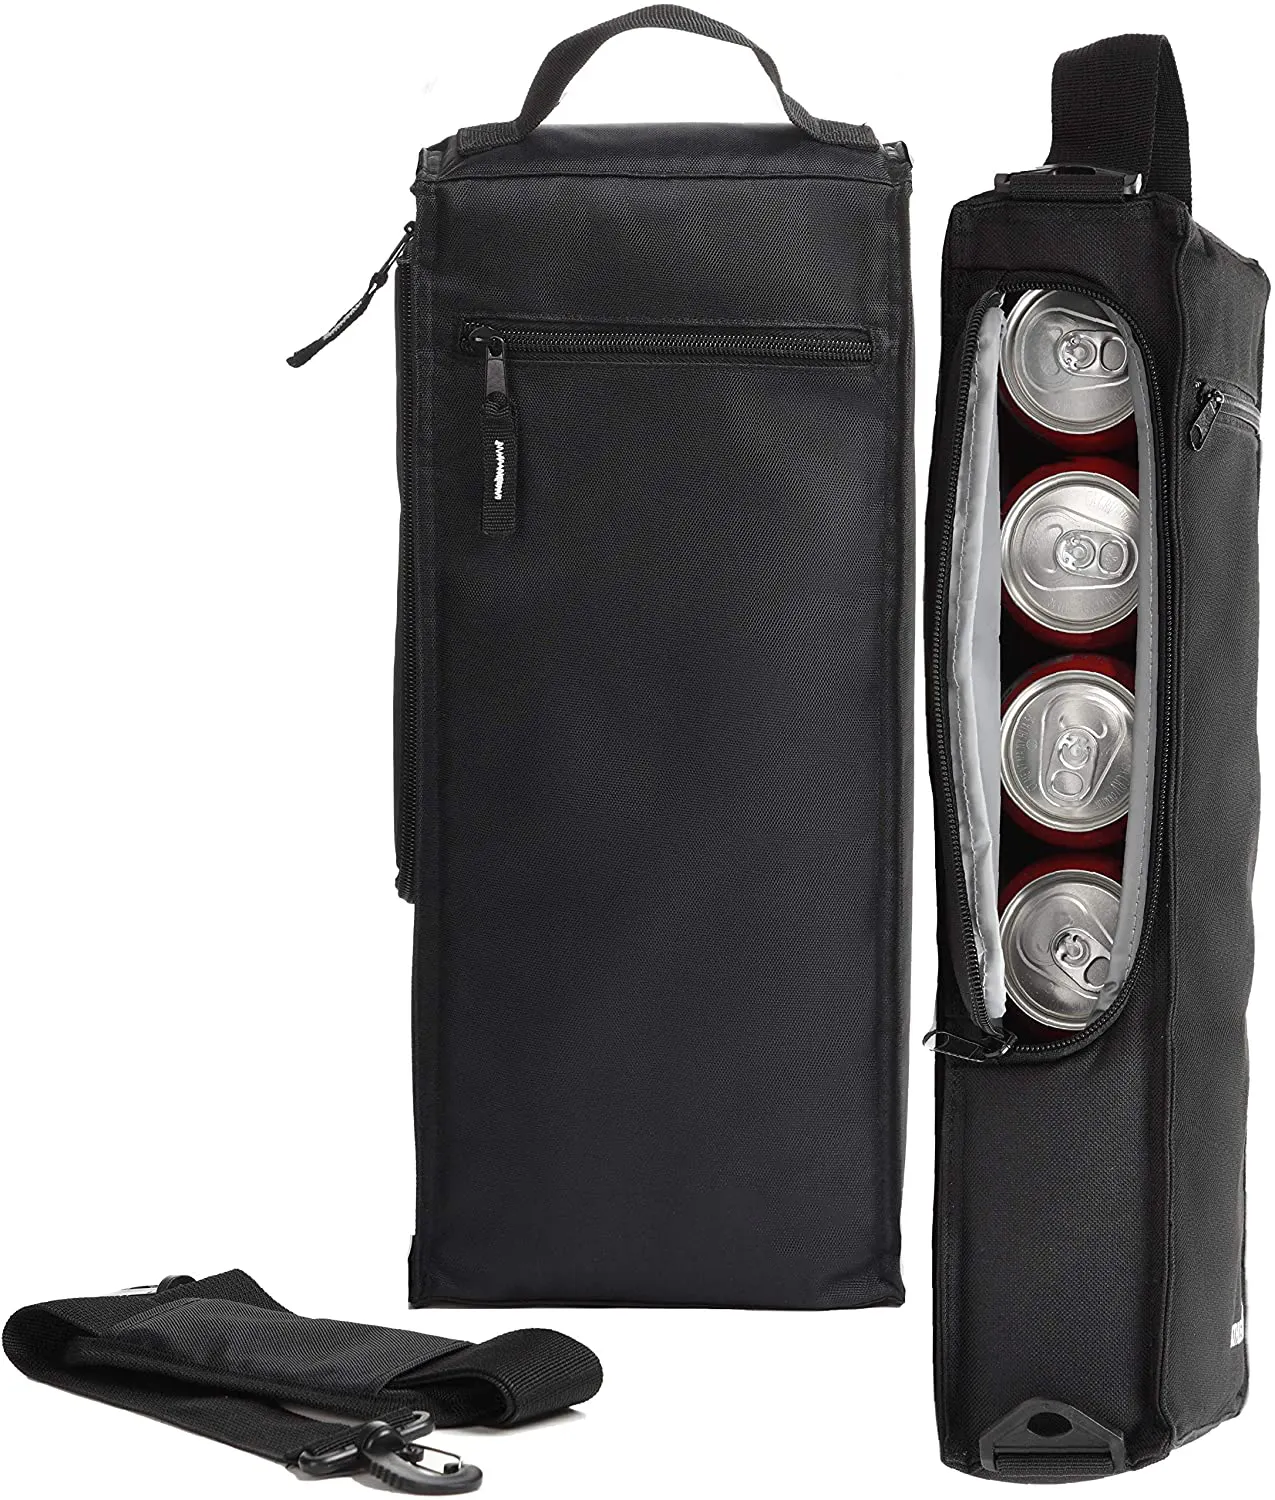 גולף Cooler תיק-רך צדדי מבודד Cooler מחזיק 6 חבילה של פחיות או שני בקבוקי יין